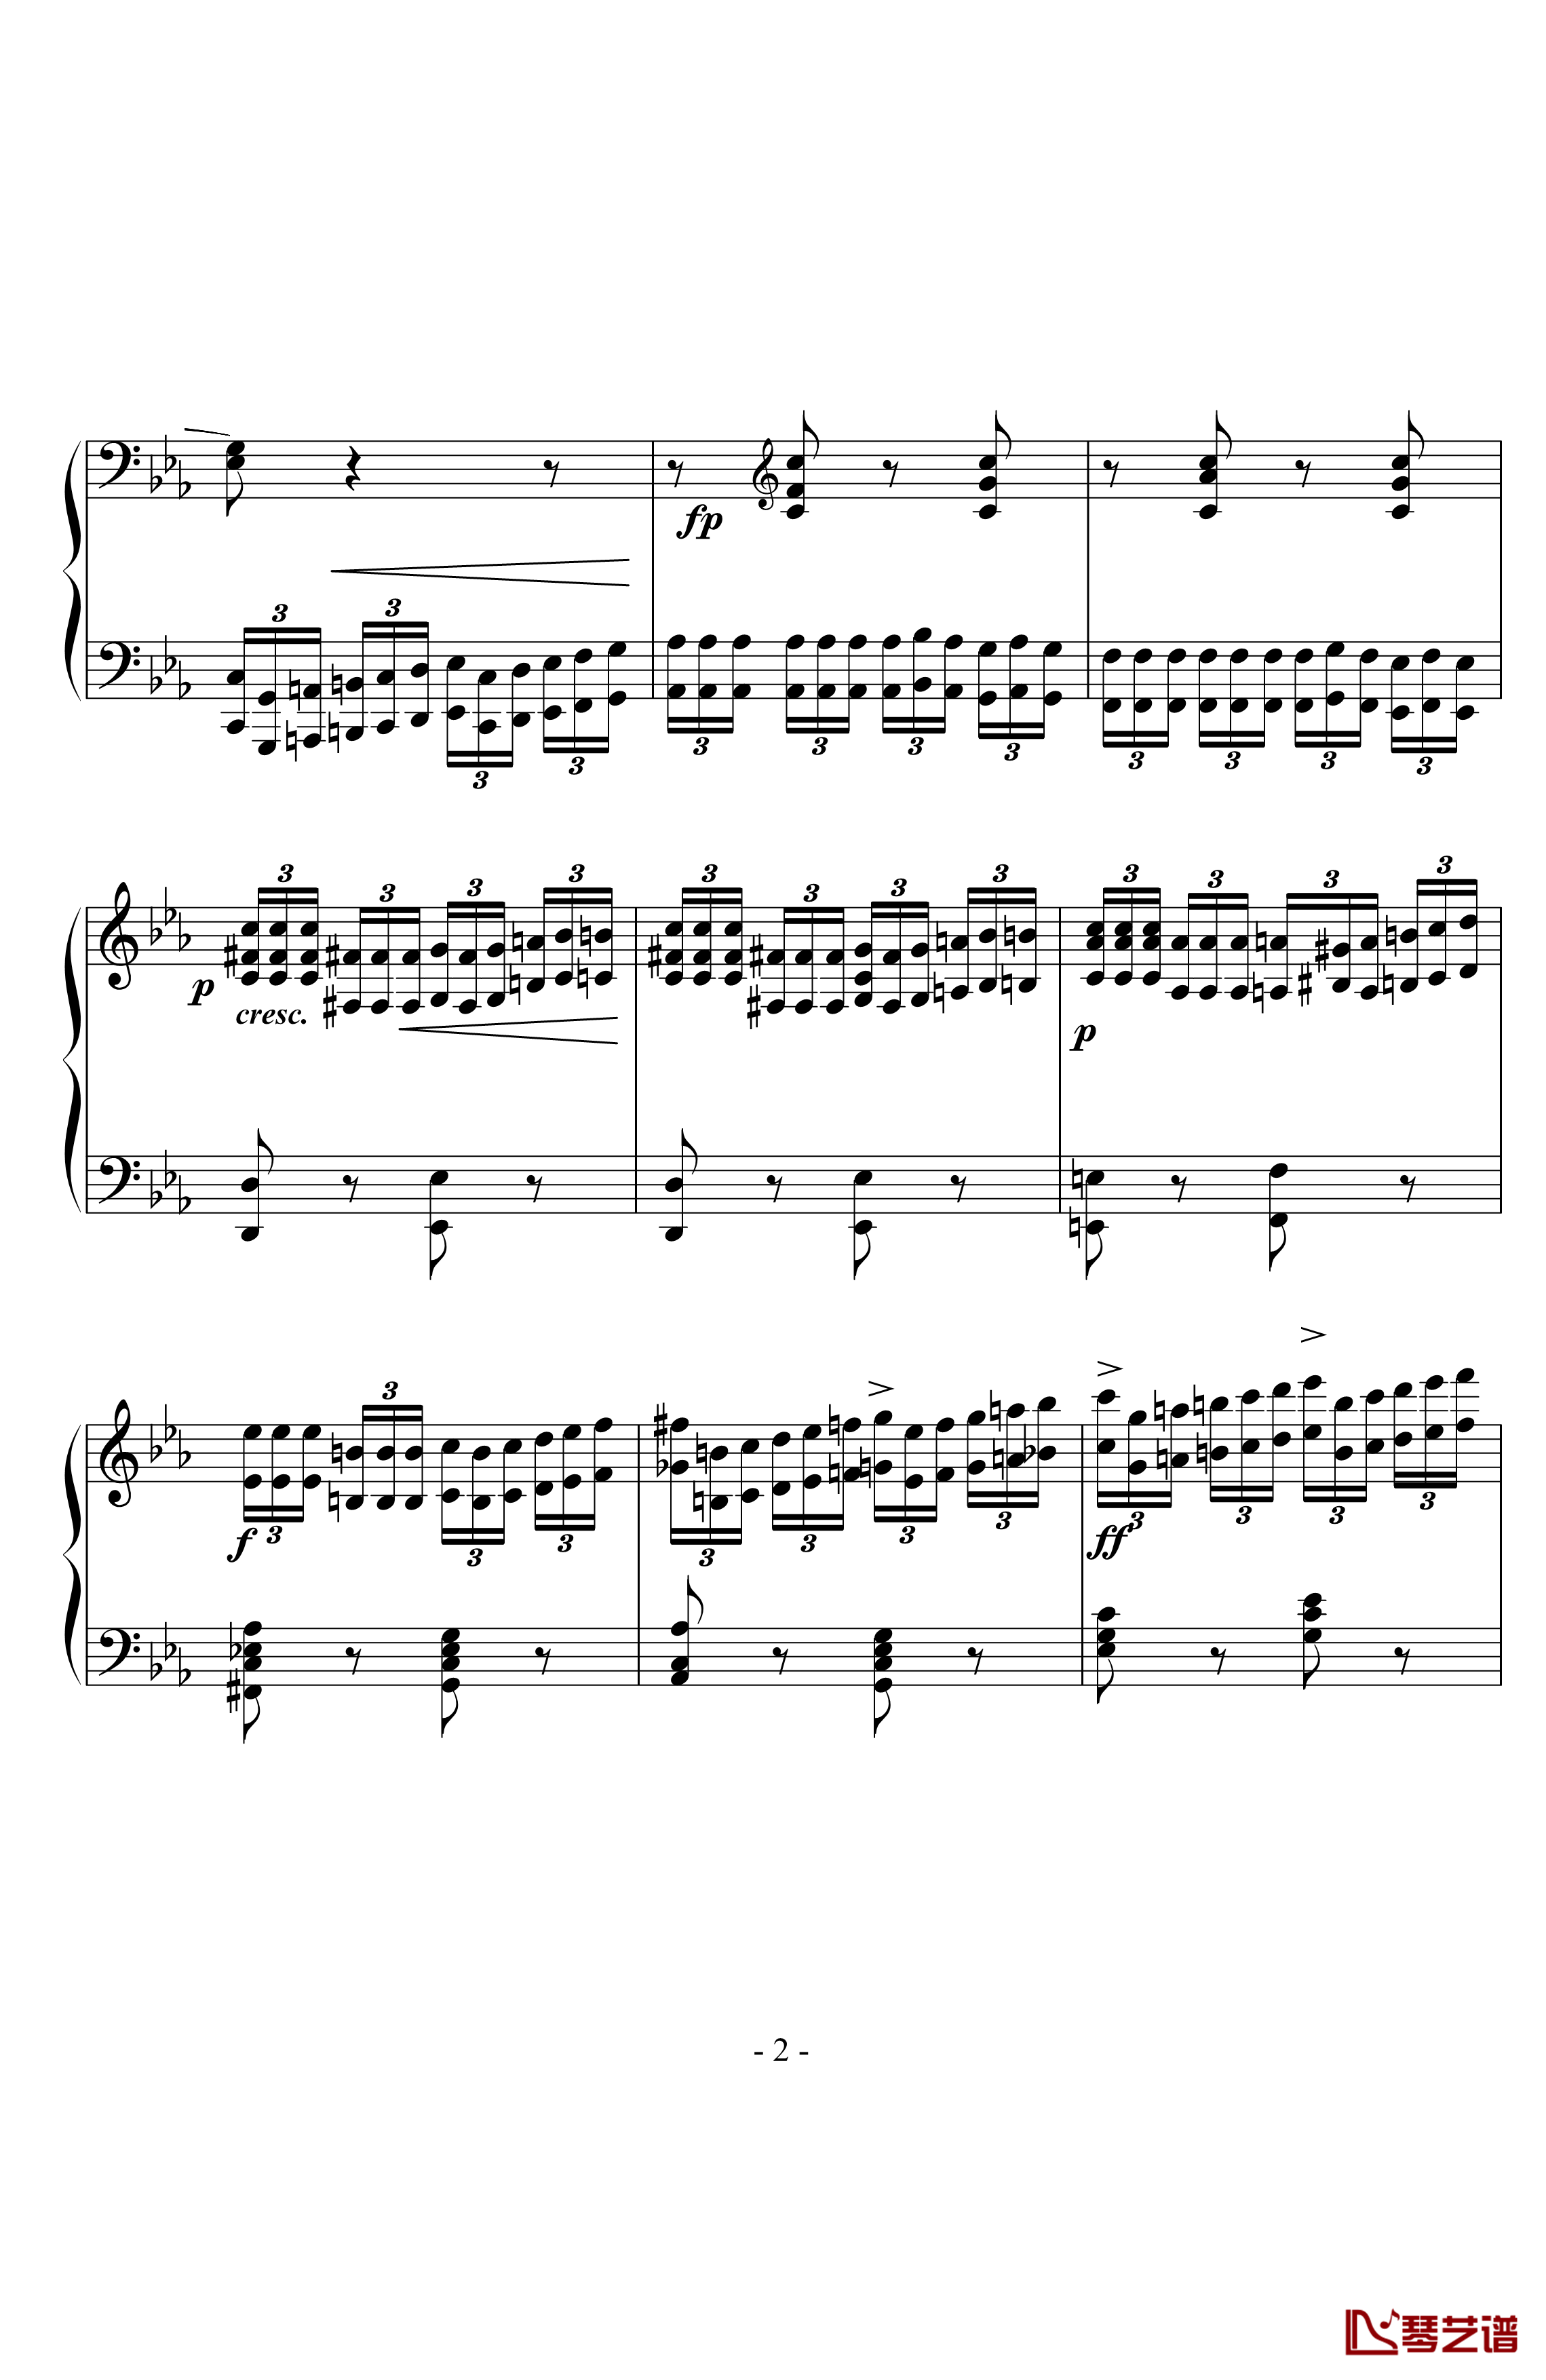 八度练习曲钢琴谱-十级类技巧性练习曲-卡本良斯基2